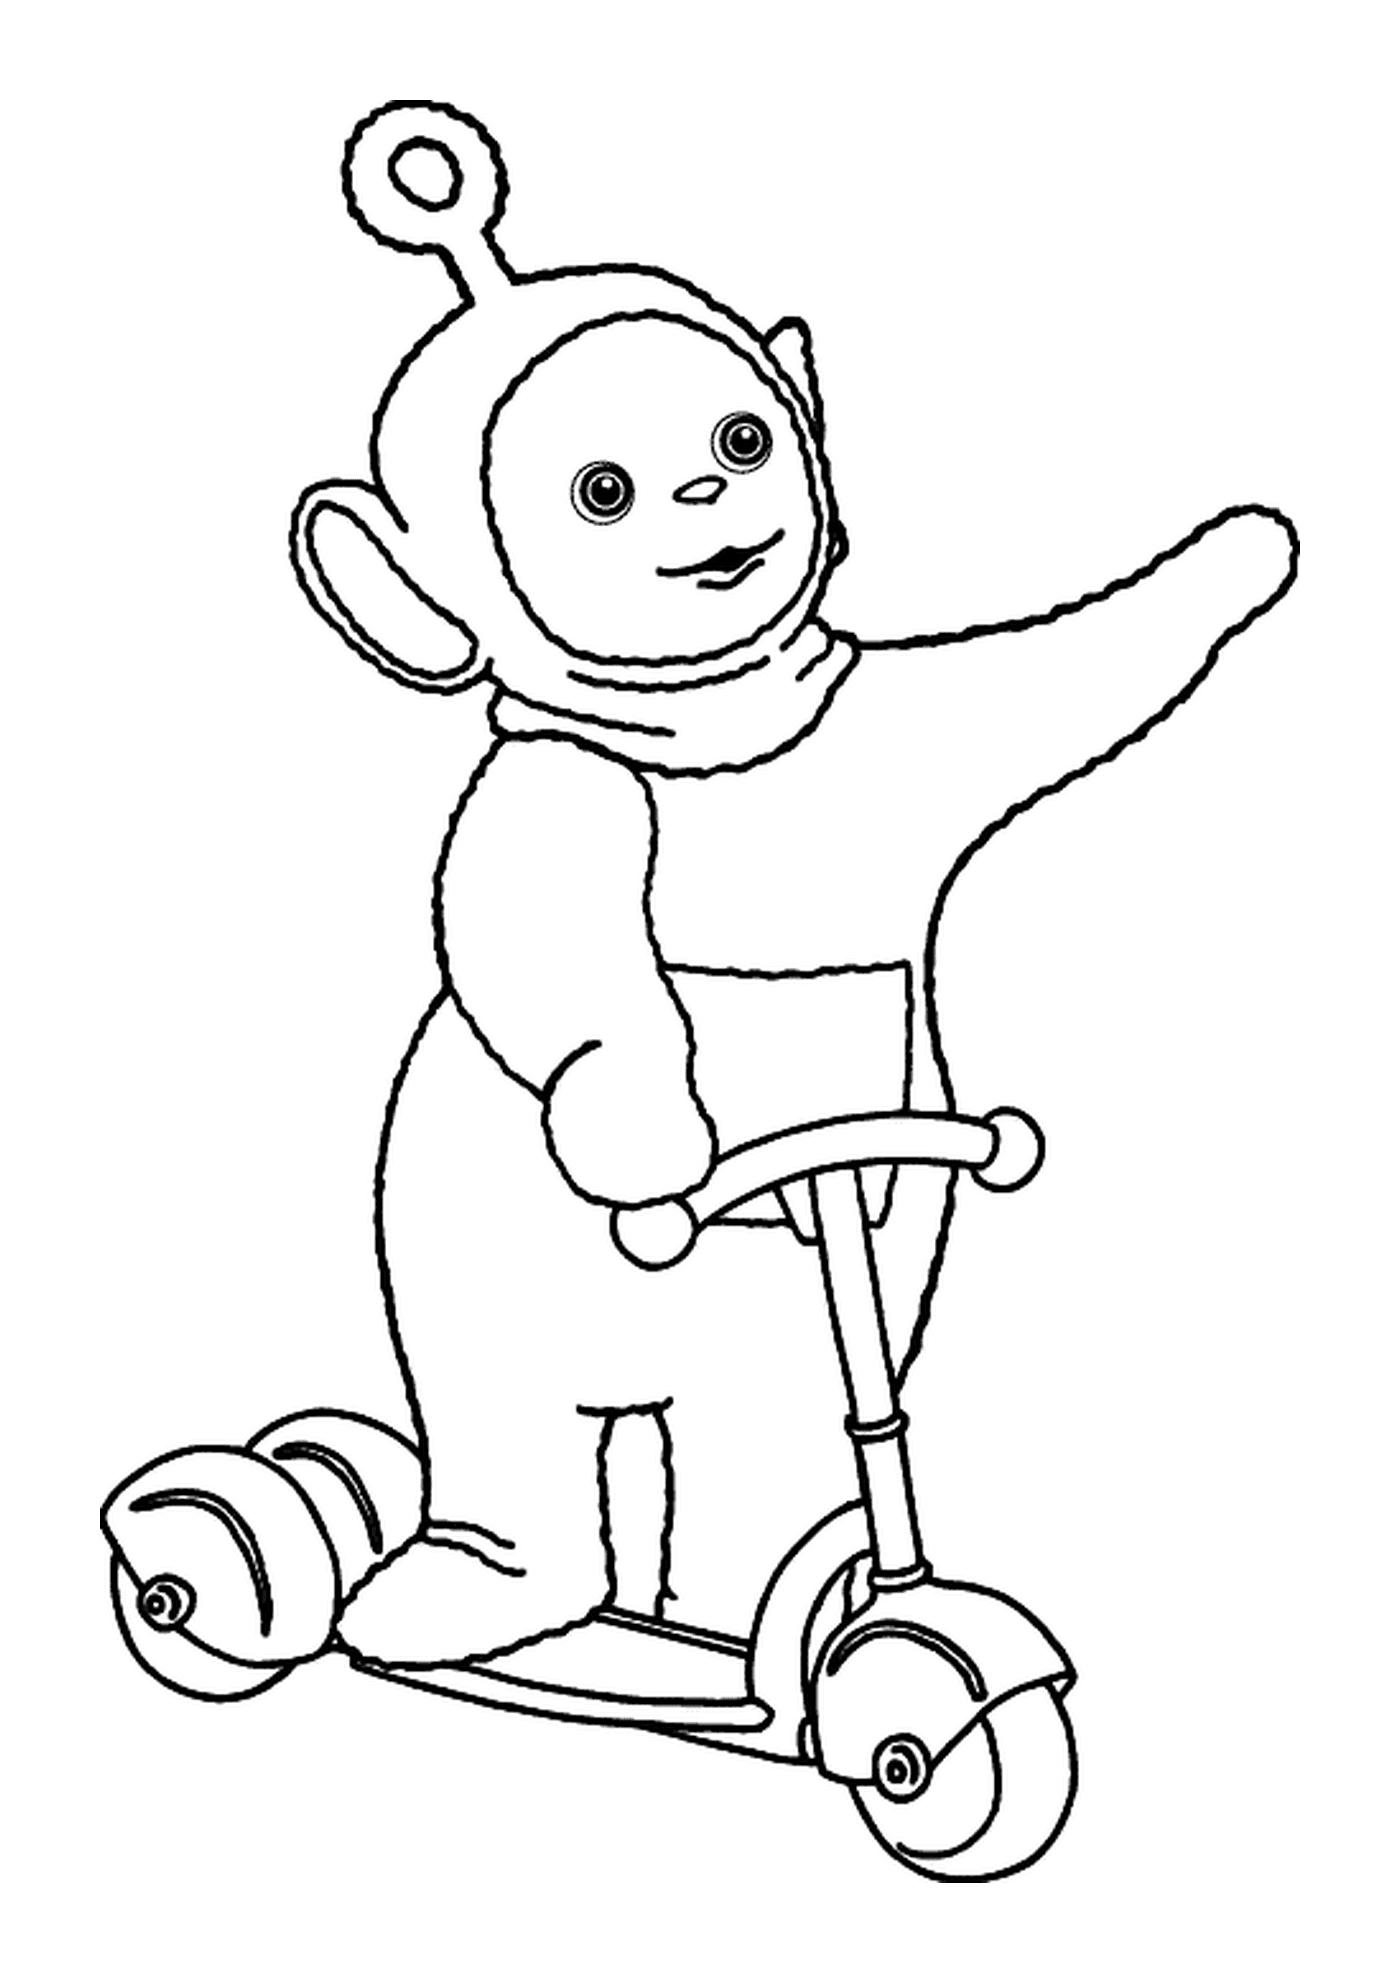  猴子骑三轮车的乐趣 